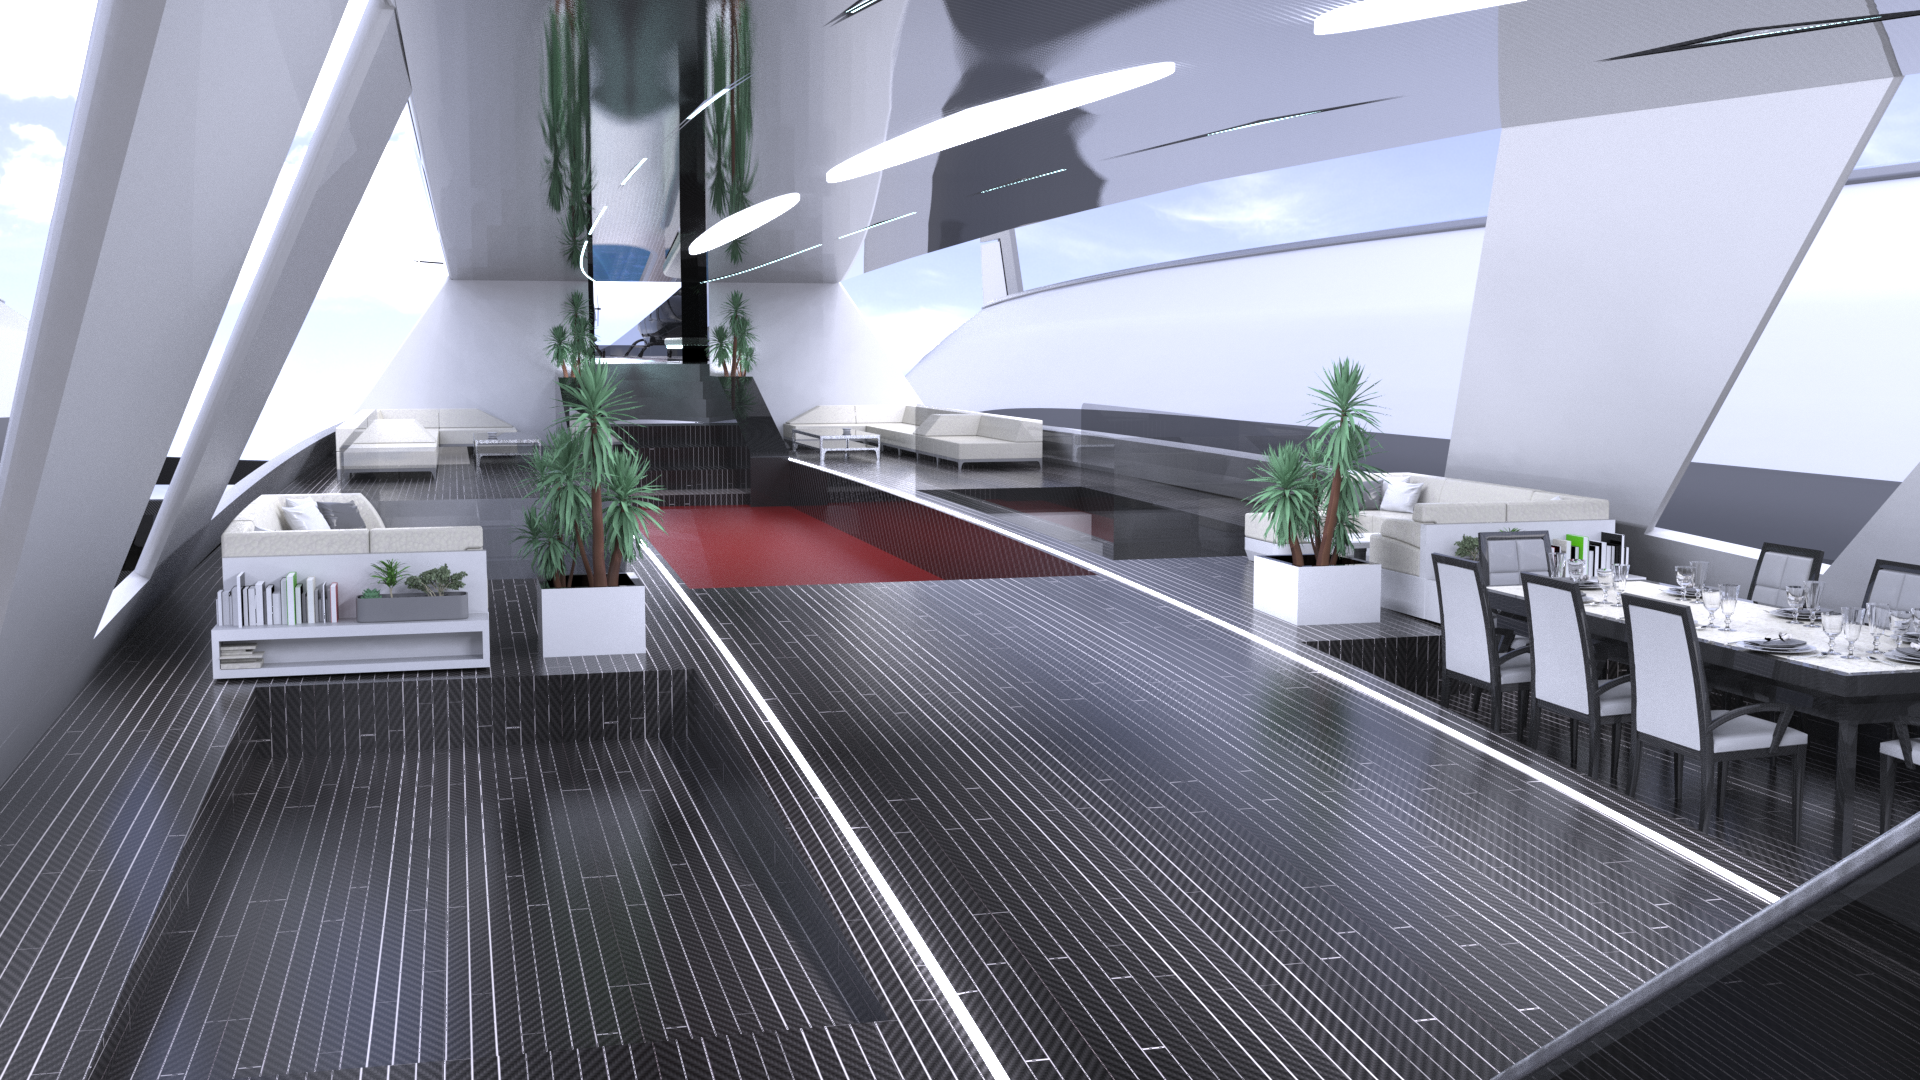 Il concept 'Sky Yacht' elaborato dallo studio Lazzarini Design per una mobilità aerea e acquatica sostenibile: la sala da pranzo della sezione centrale